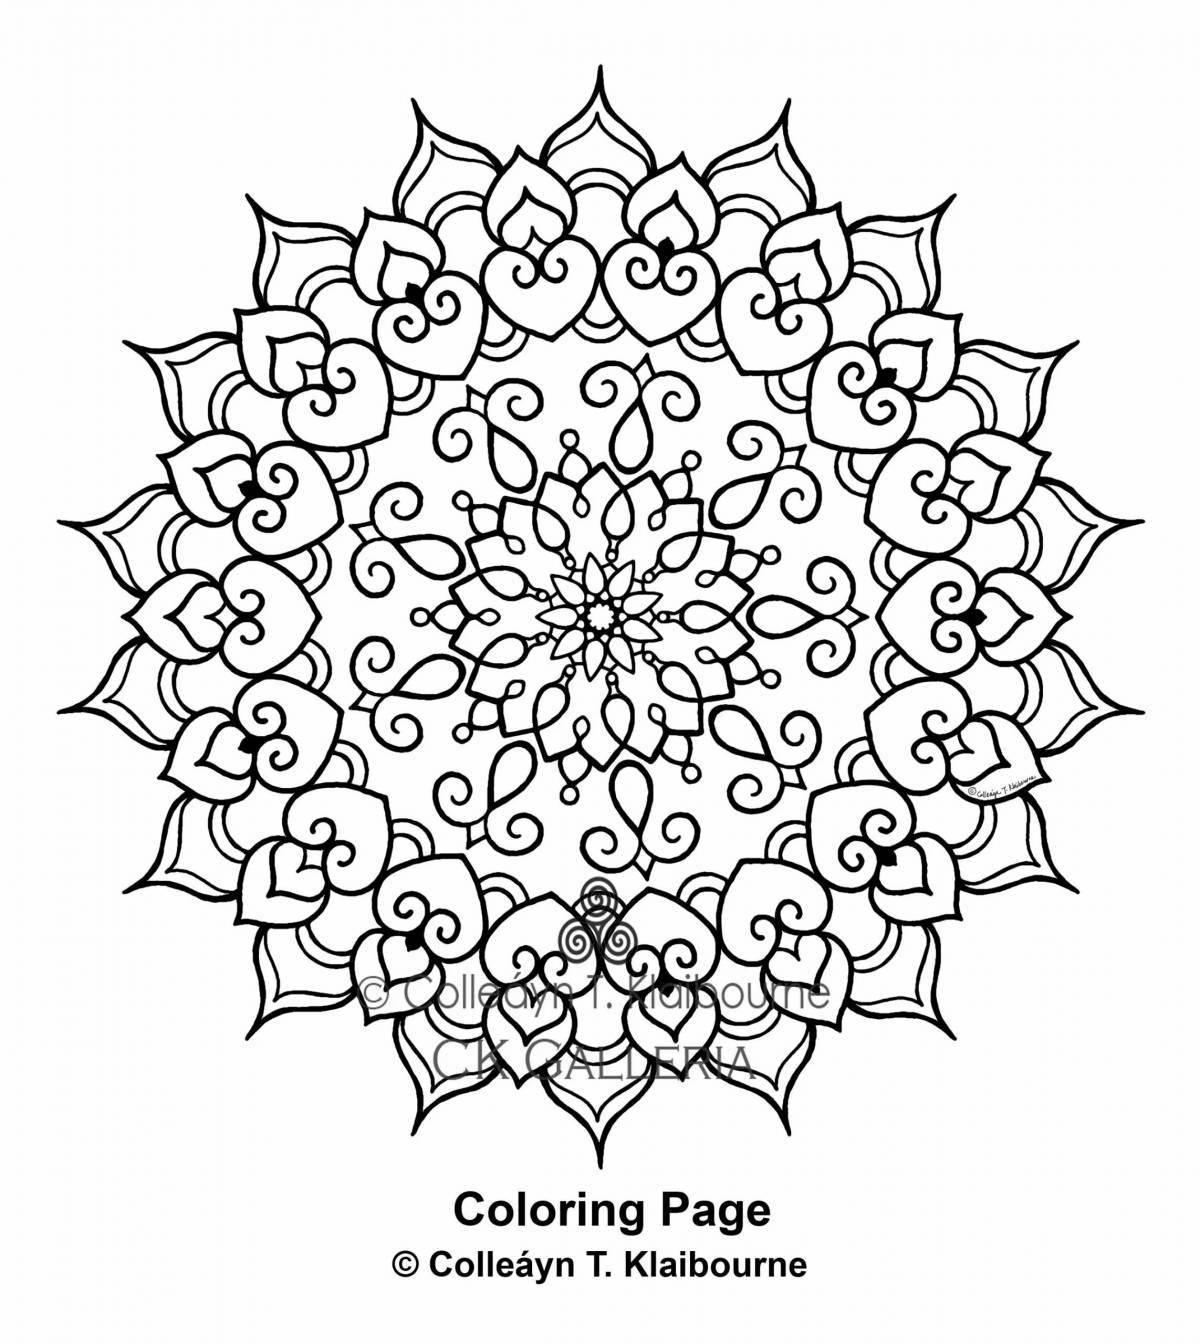 Colorful cash flow mandala coloring book